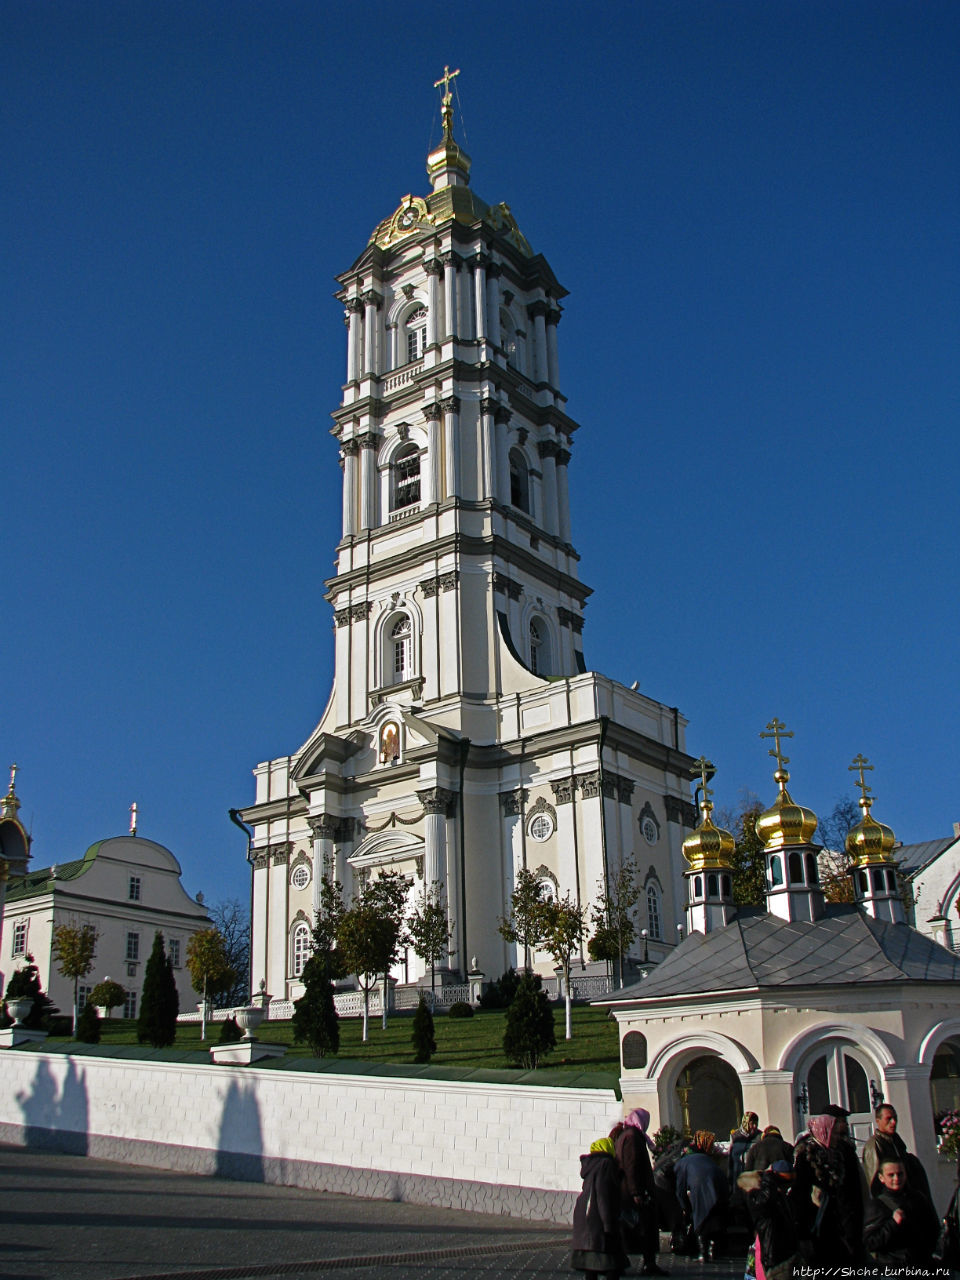 Пятиярусная колокольня, высота 65 метров Почаев, Украина